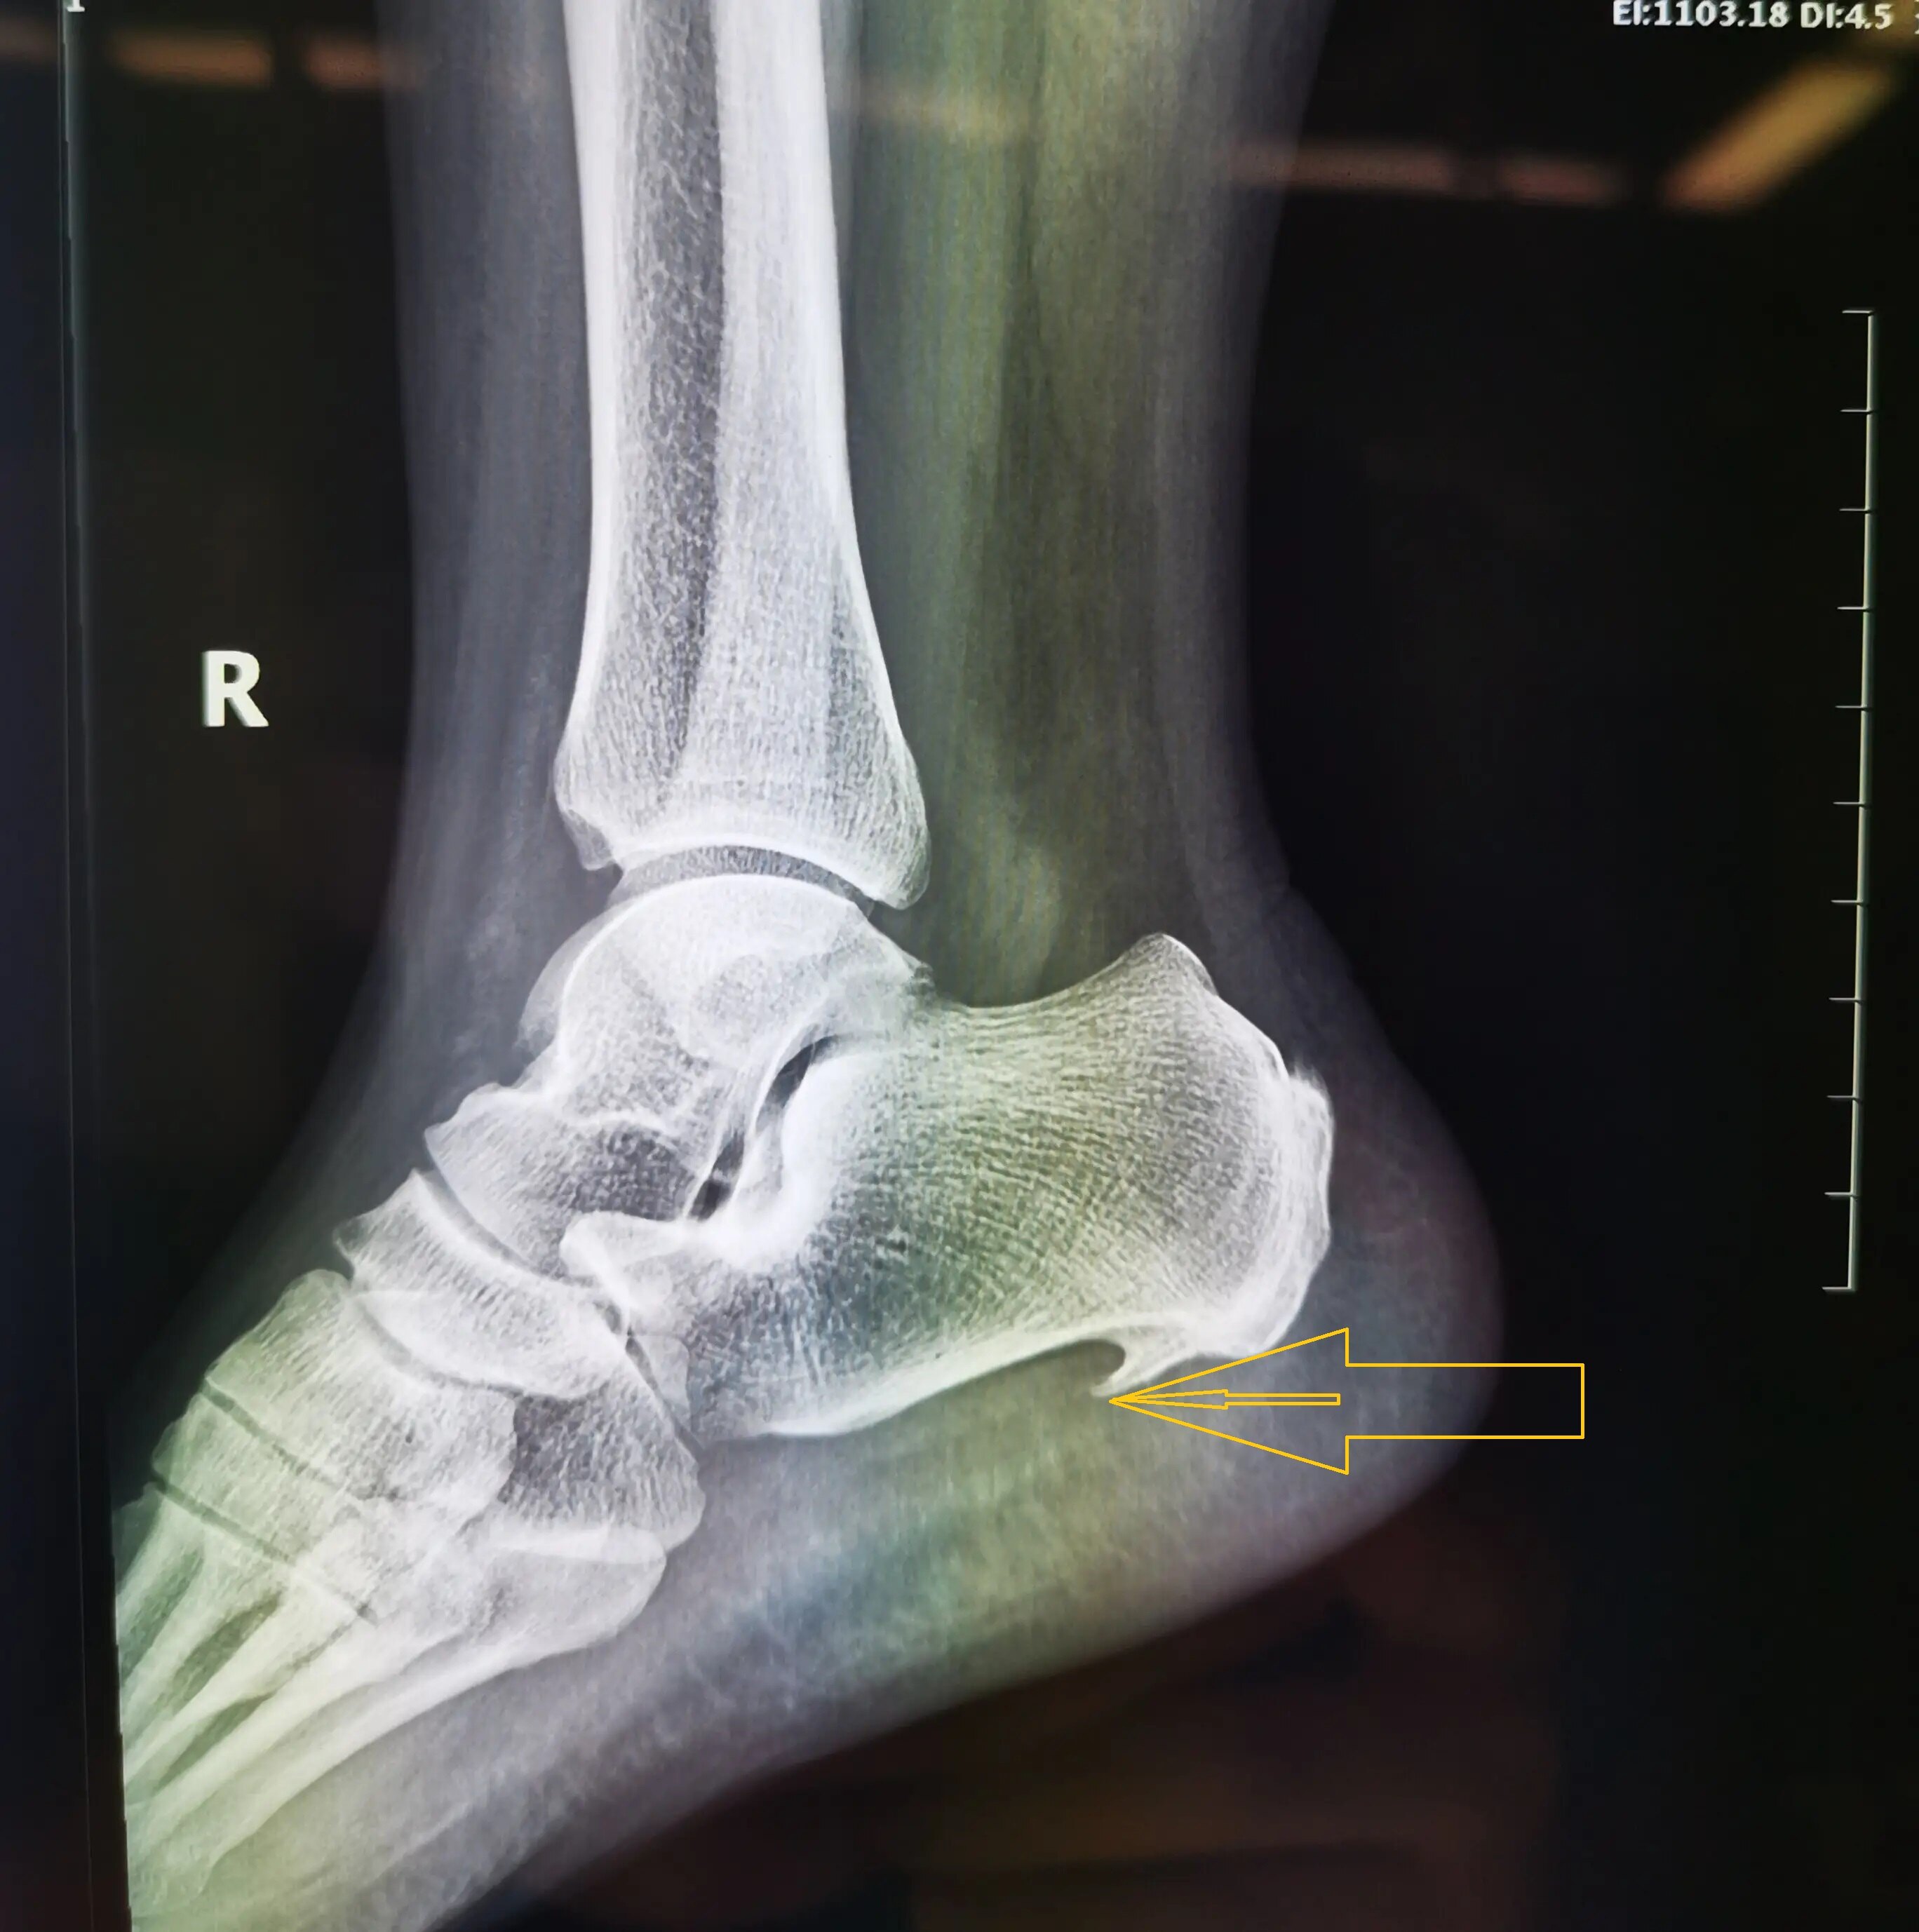 多见于老年患者,当有脚后跟痛时,经过拍摄x光片,可以发现跟骨结节处有